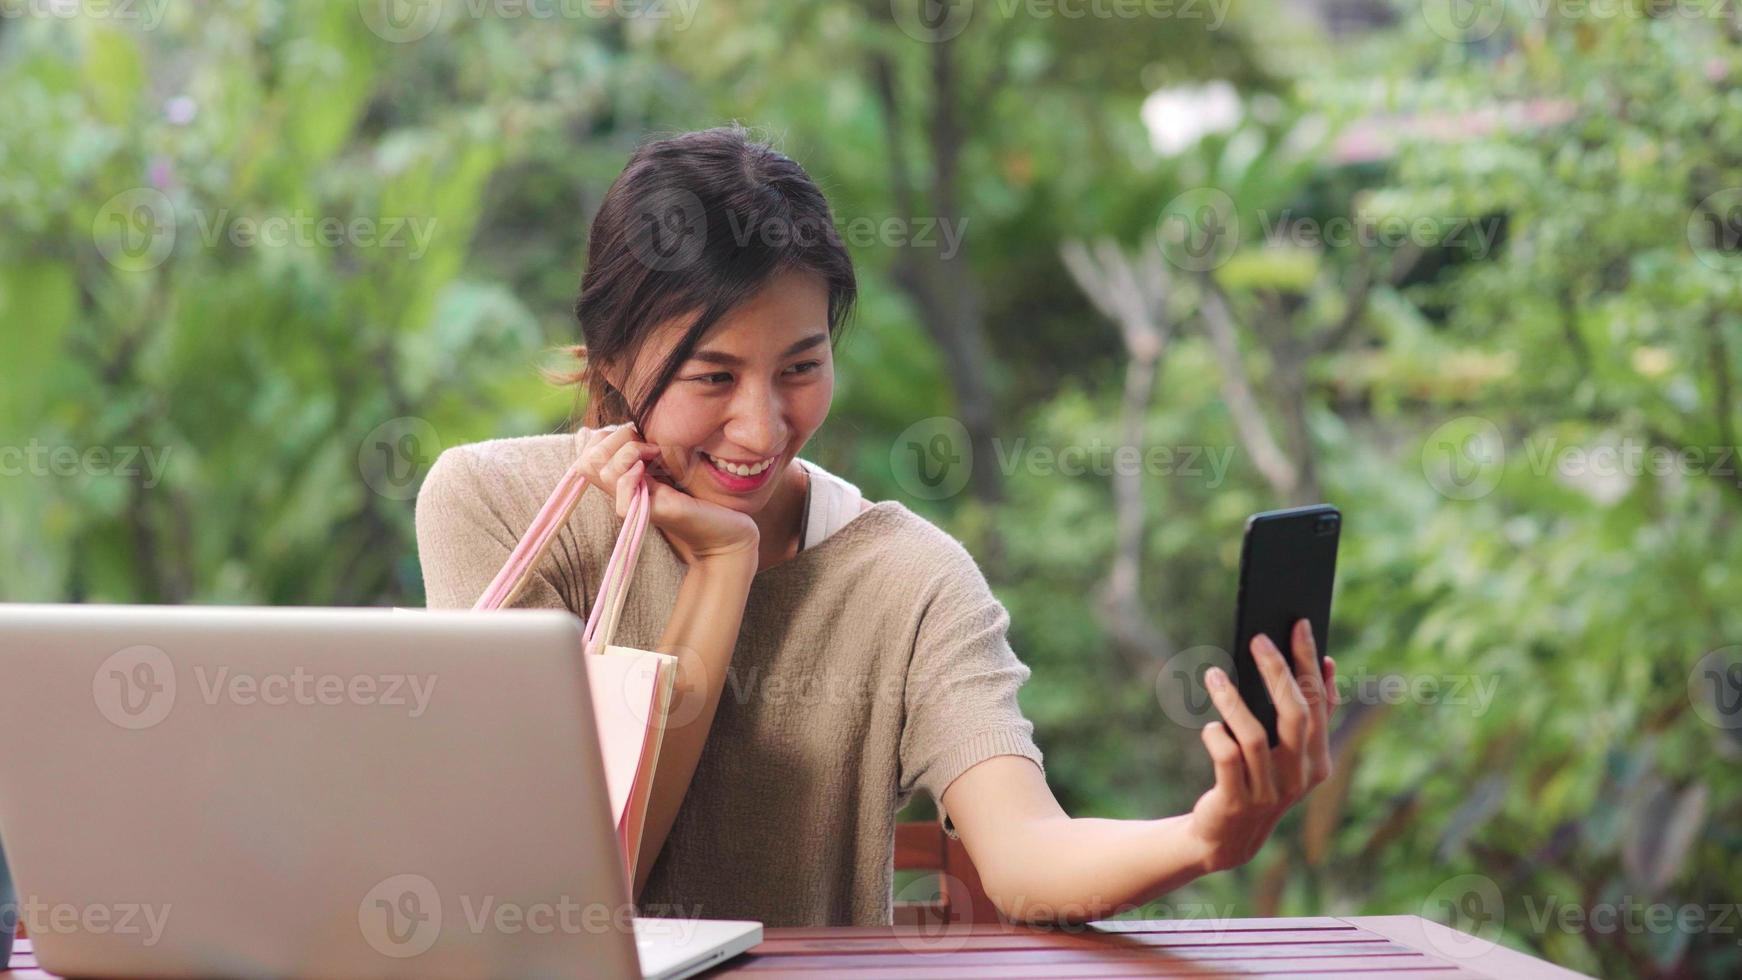 aziatische vrouw die selfie-post van mobiele telefoons gebruikt op sociale media, vrouw ontspant zich gelukkig met boodschappentassen die 's ochtends op tafel in de tuin zitten. levensstijl vrouwen ontspannen thuis concept. foto